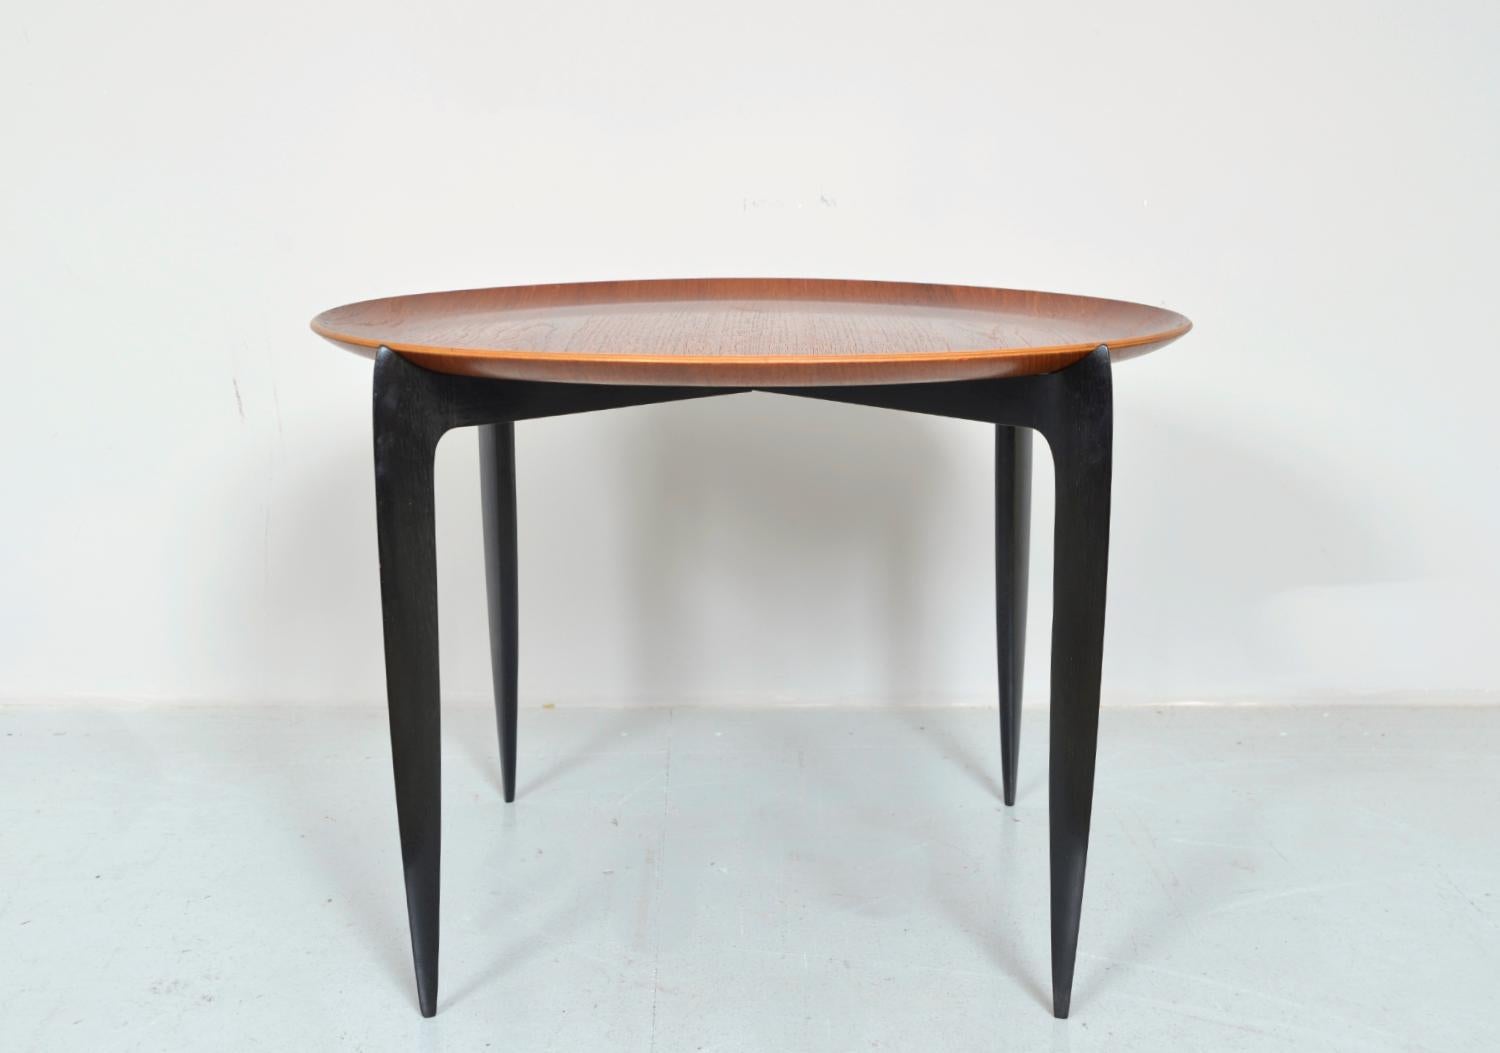 Ein sehr stilvoller Teakholz-Tisch, Modell 4508, entworfen von H. Engholm und Sven Aage Willumsen für Fritz Hansen im Jahr 1957. Das runde Tablett ist aus Teakholz gefertigt und steht auf einem klappbaren Holzsockel mit vier Säbelbeinen aus